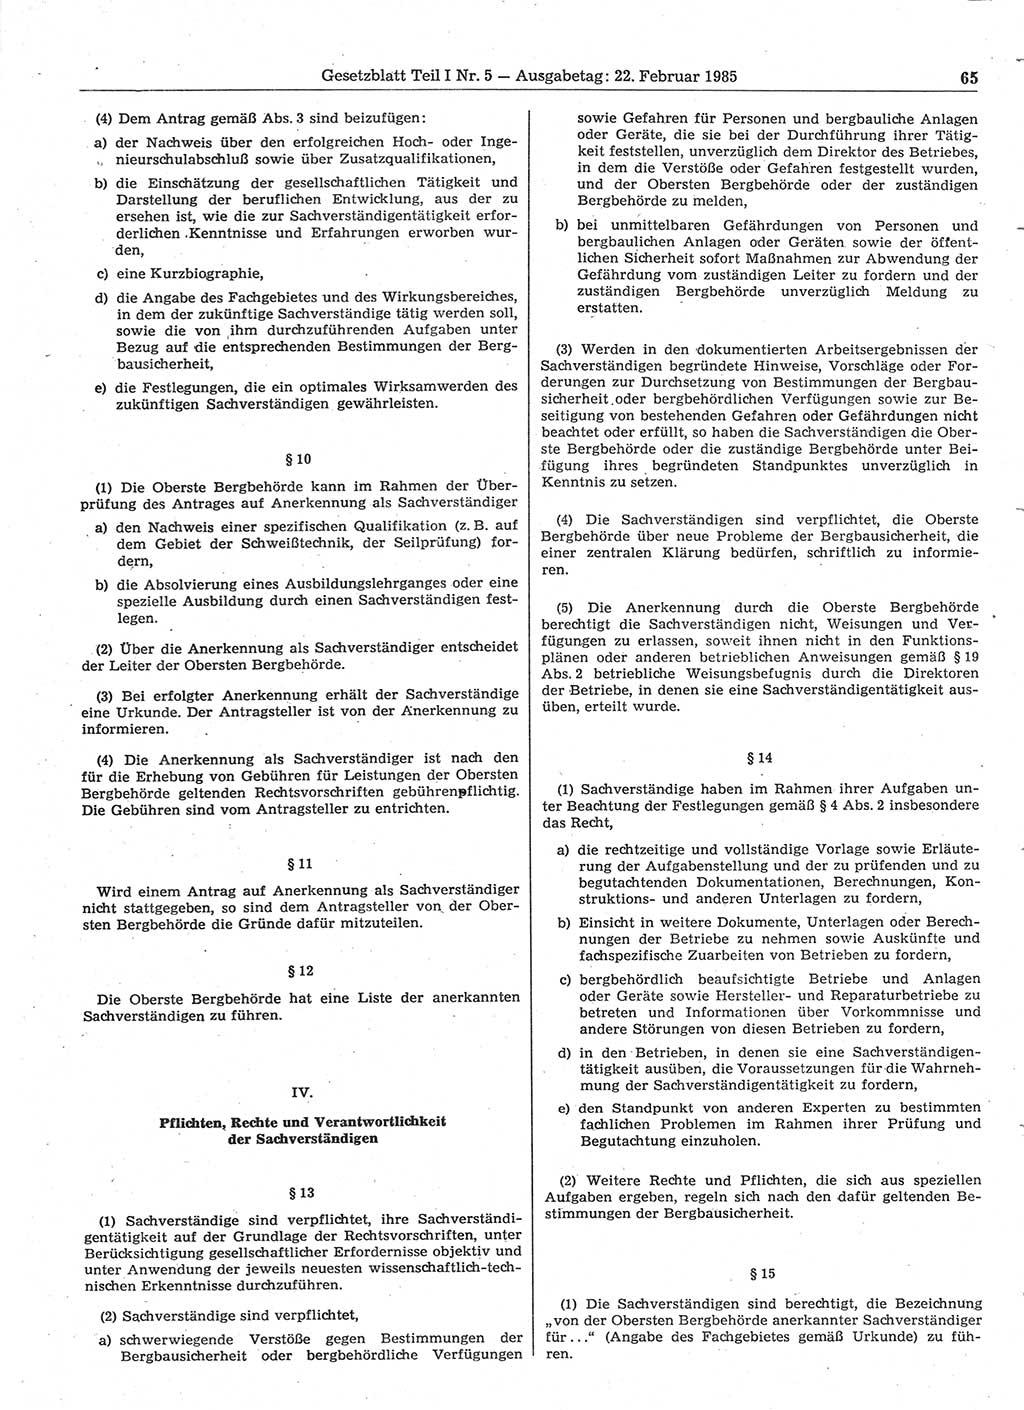 Gesetzblatt (GBl.) der Deutschen Demokratischen Republik (DDR) Teil Ⅰ 1985, Seite 65 (GBl. DDR Ⅰ 1985, S. 65)